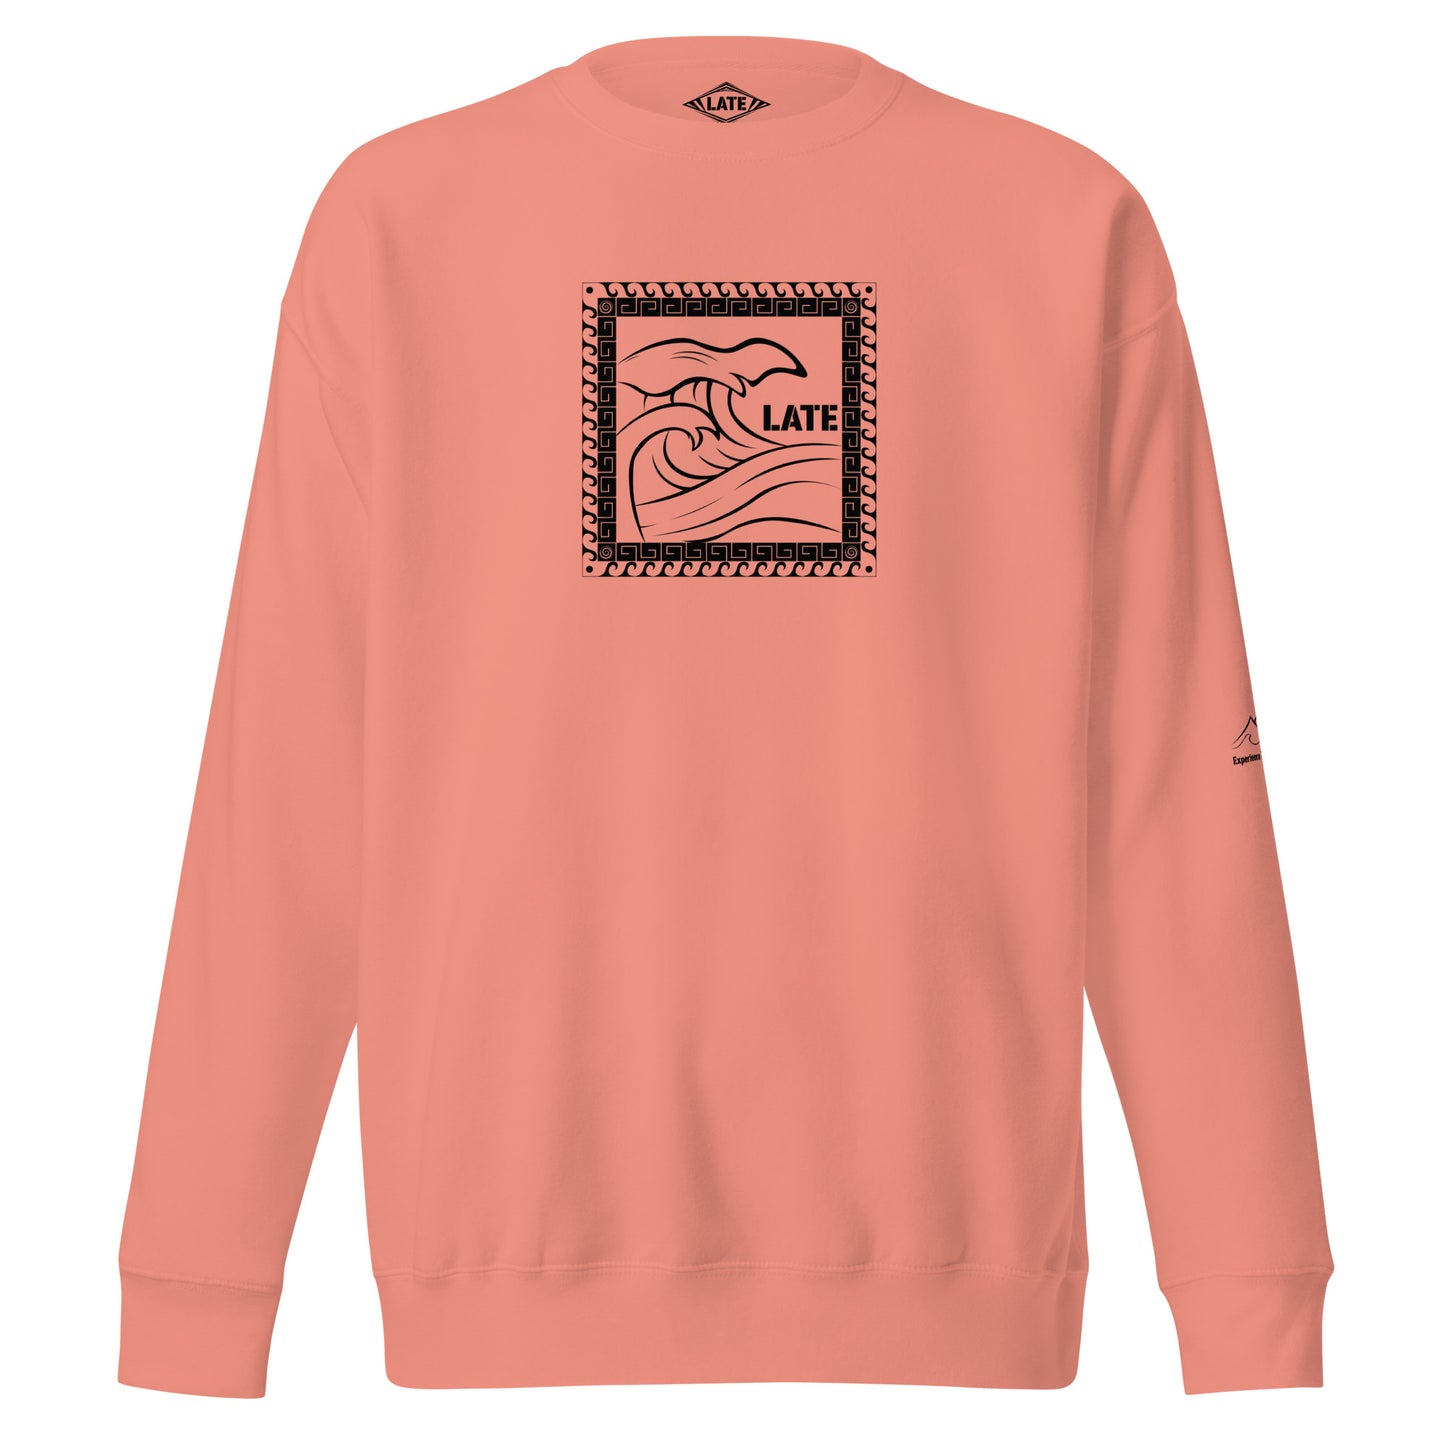 Sweatshirt surf Tricky Wave maori vague japonaise, sweat unisex couleur rose